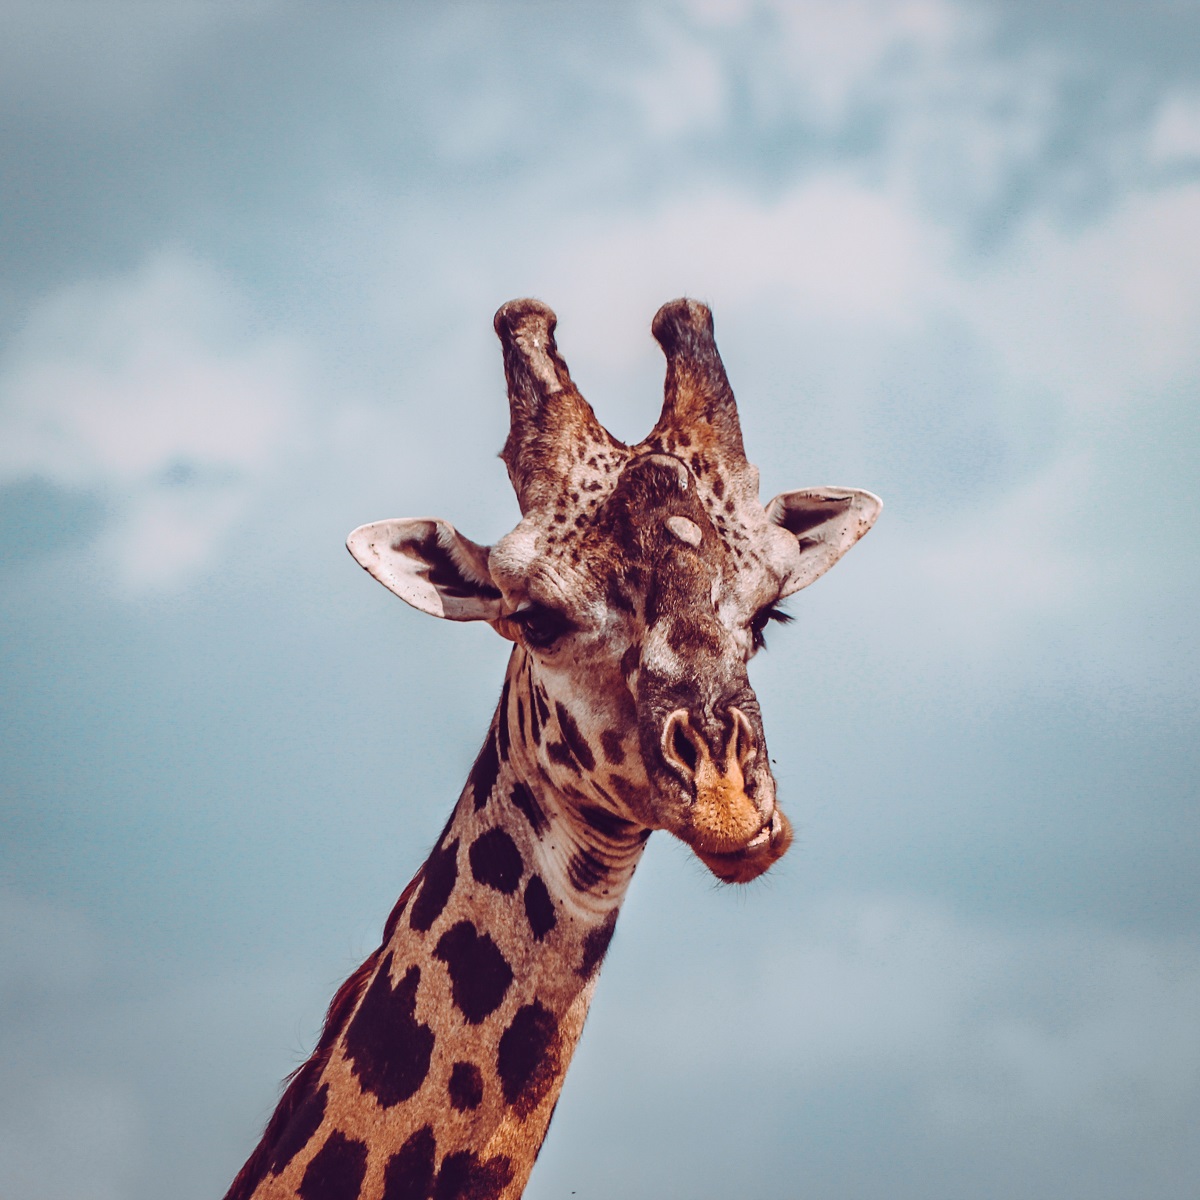 A closeup picture of a giraffe's face